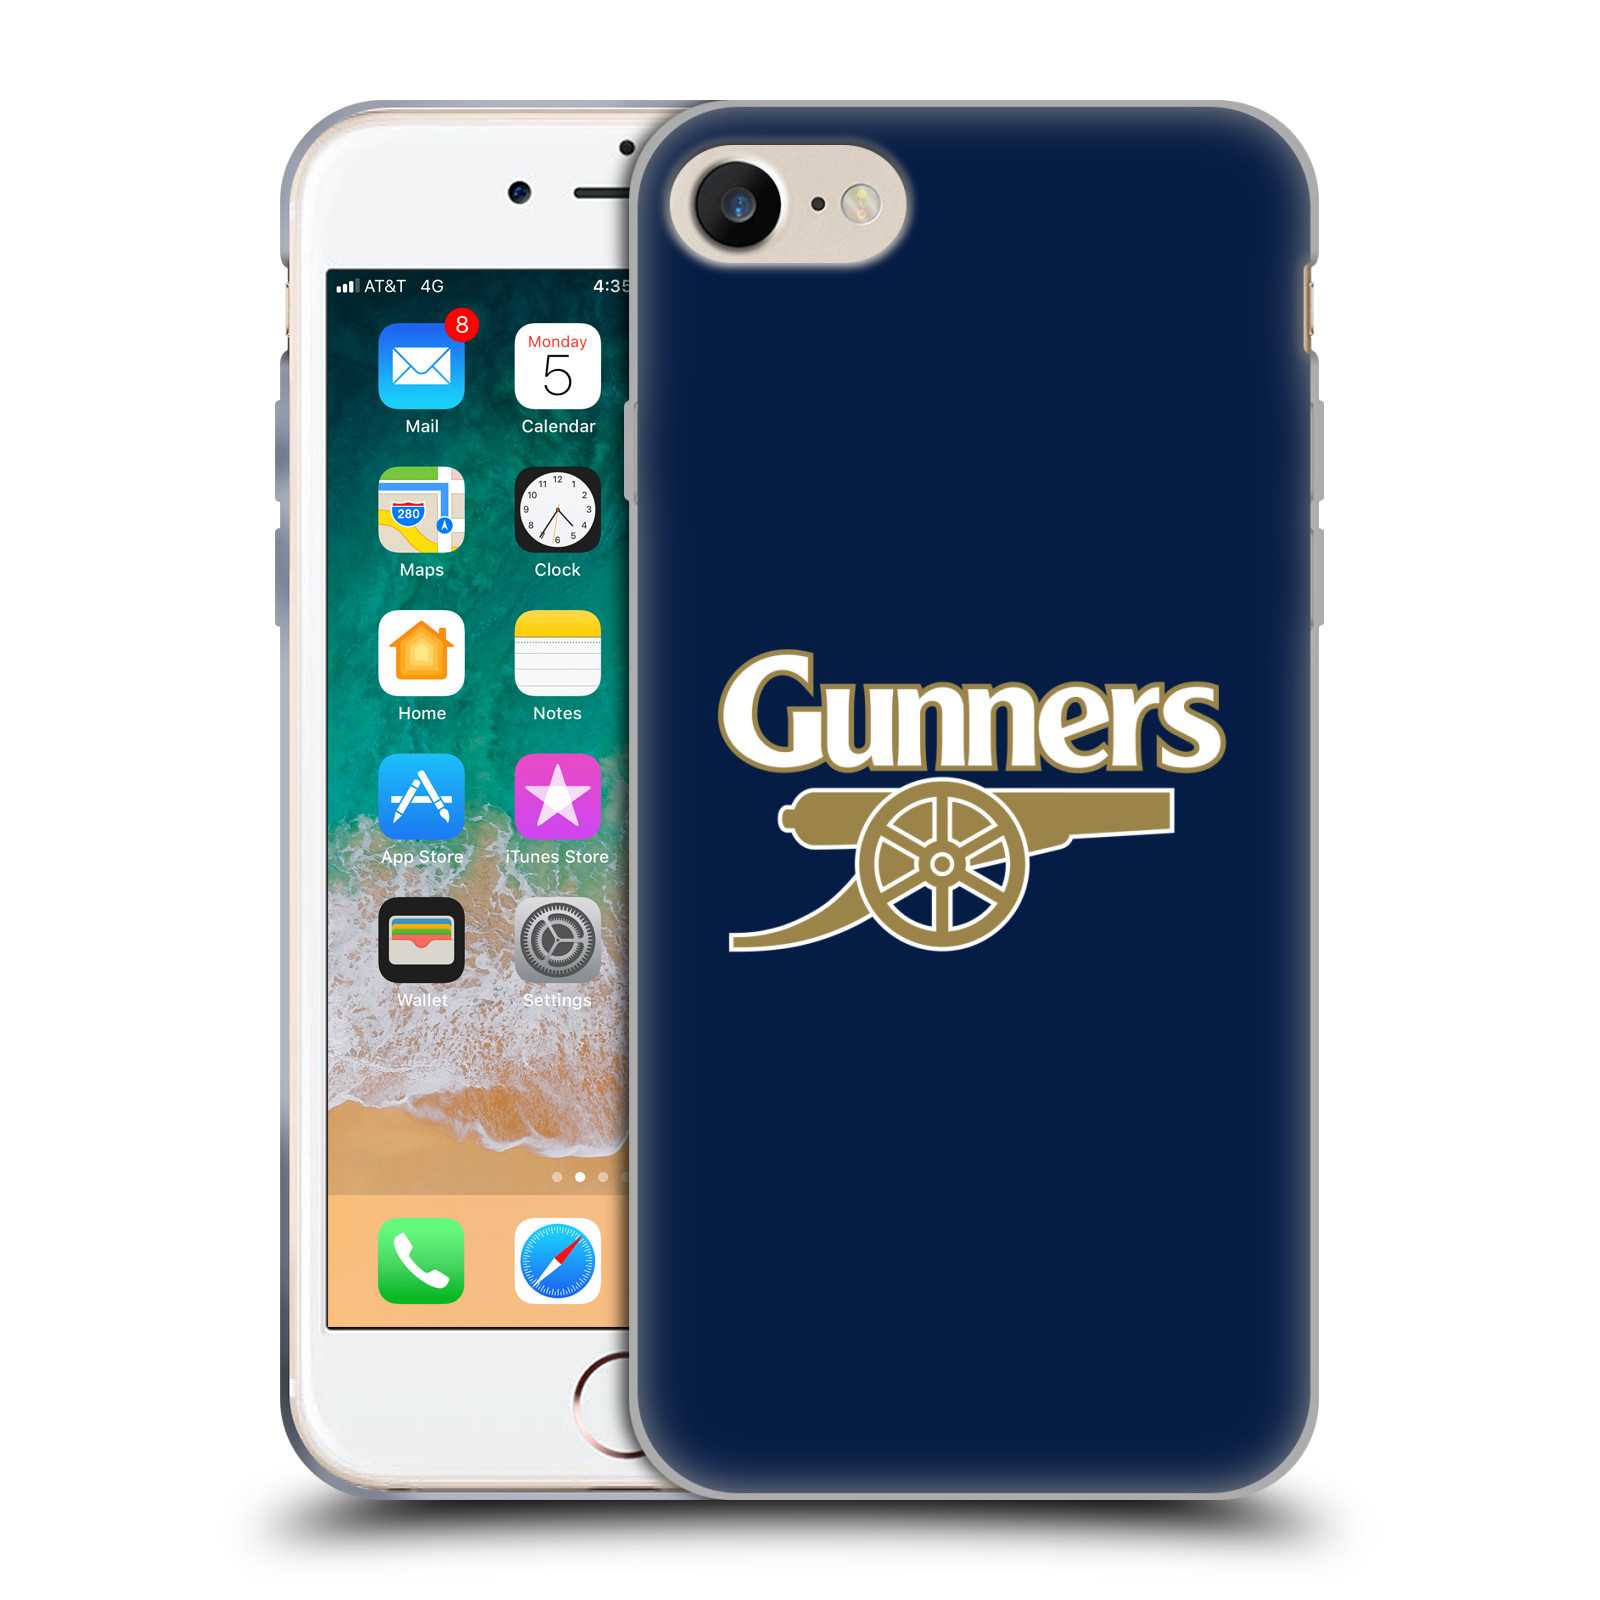 Silikonové pouzdro na mobil Apple iPhone 7 - Head Case - Arsenal FC - Gunners (Silikonový kryt či obal na mobilní telefon s motivem klubu Arsenal FC - Gunners pro Apple iPhone 7)